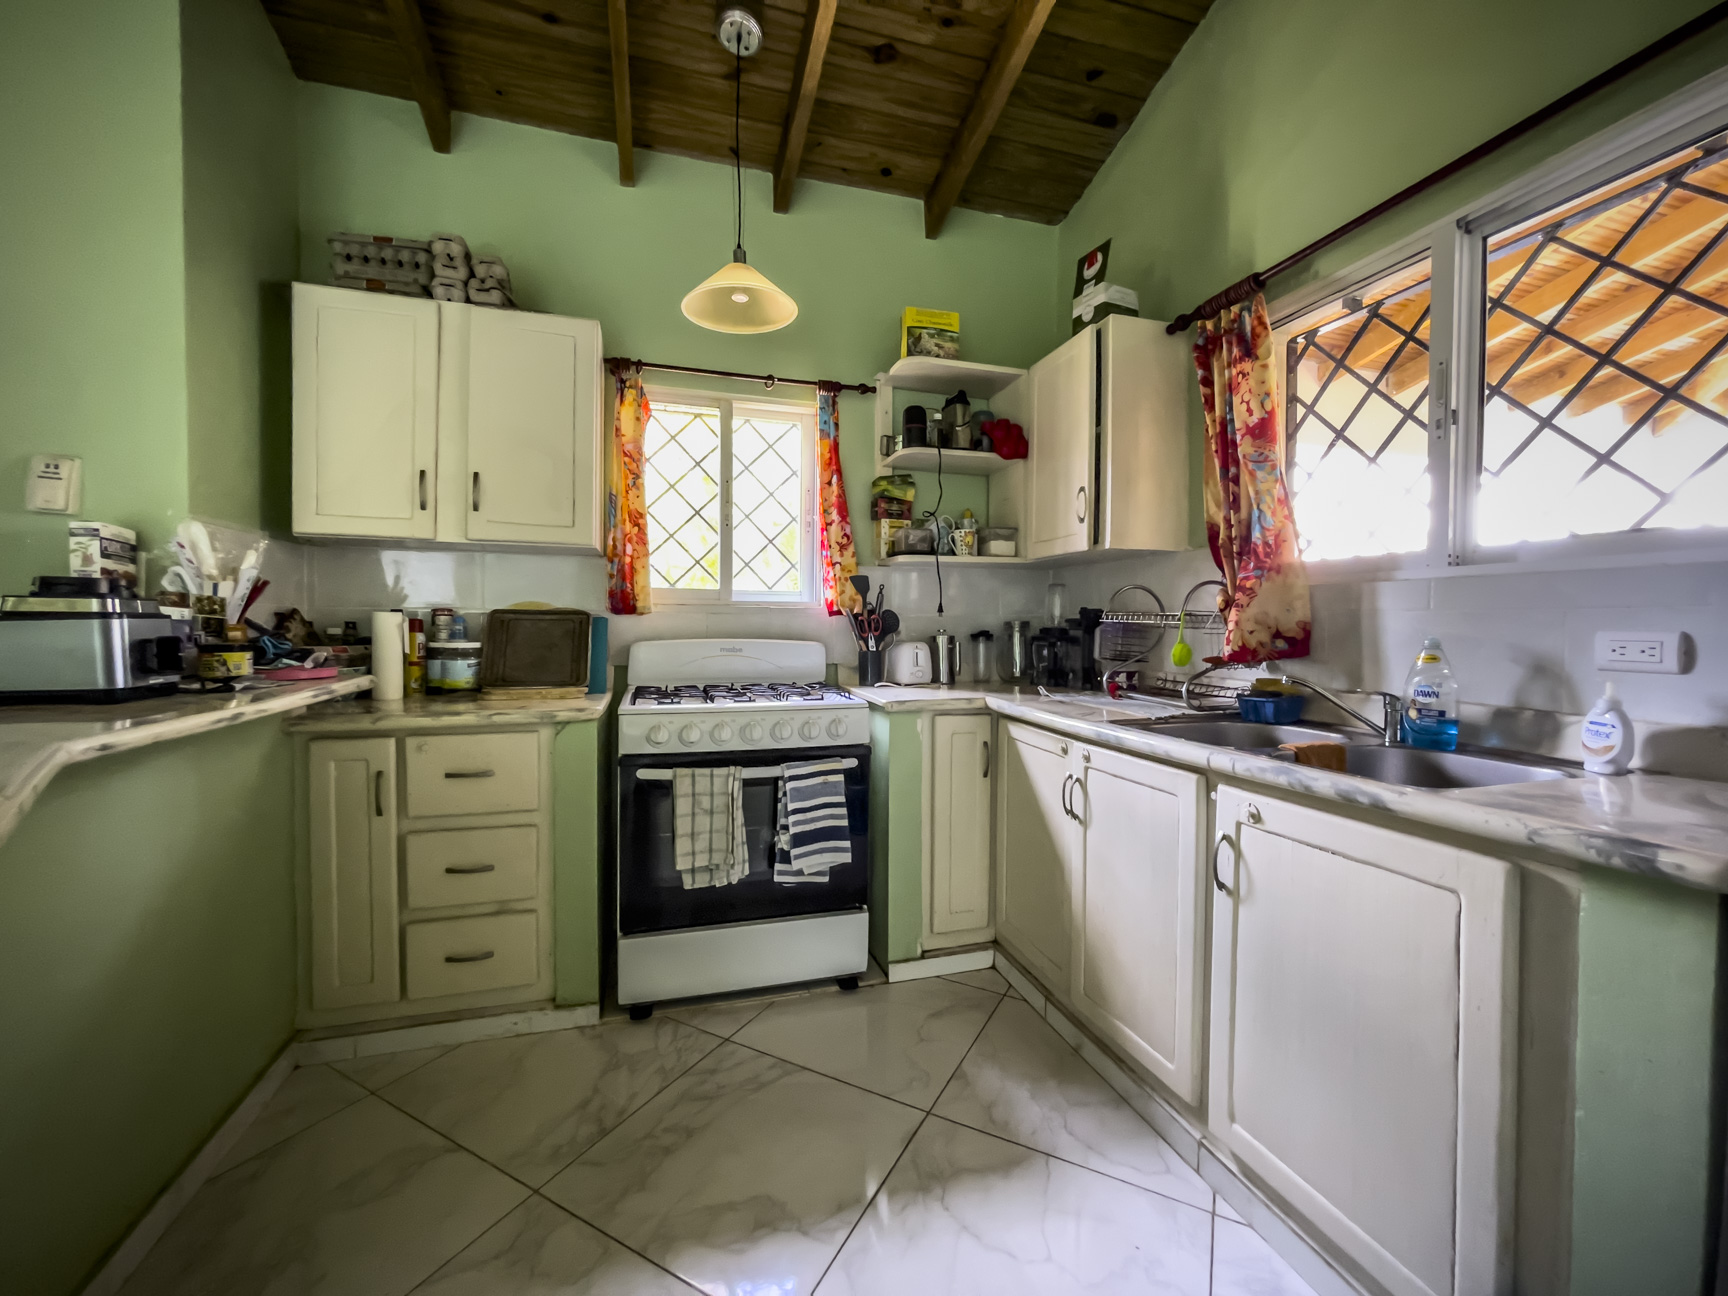 Kitchen of a 3 Bedroom Villa in Sosua